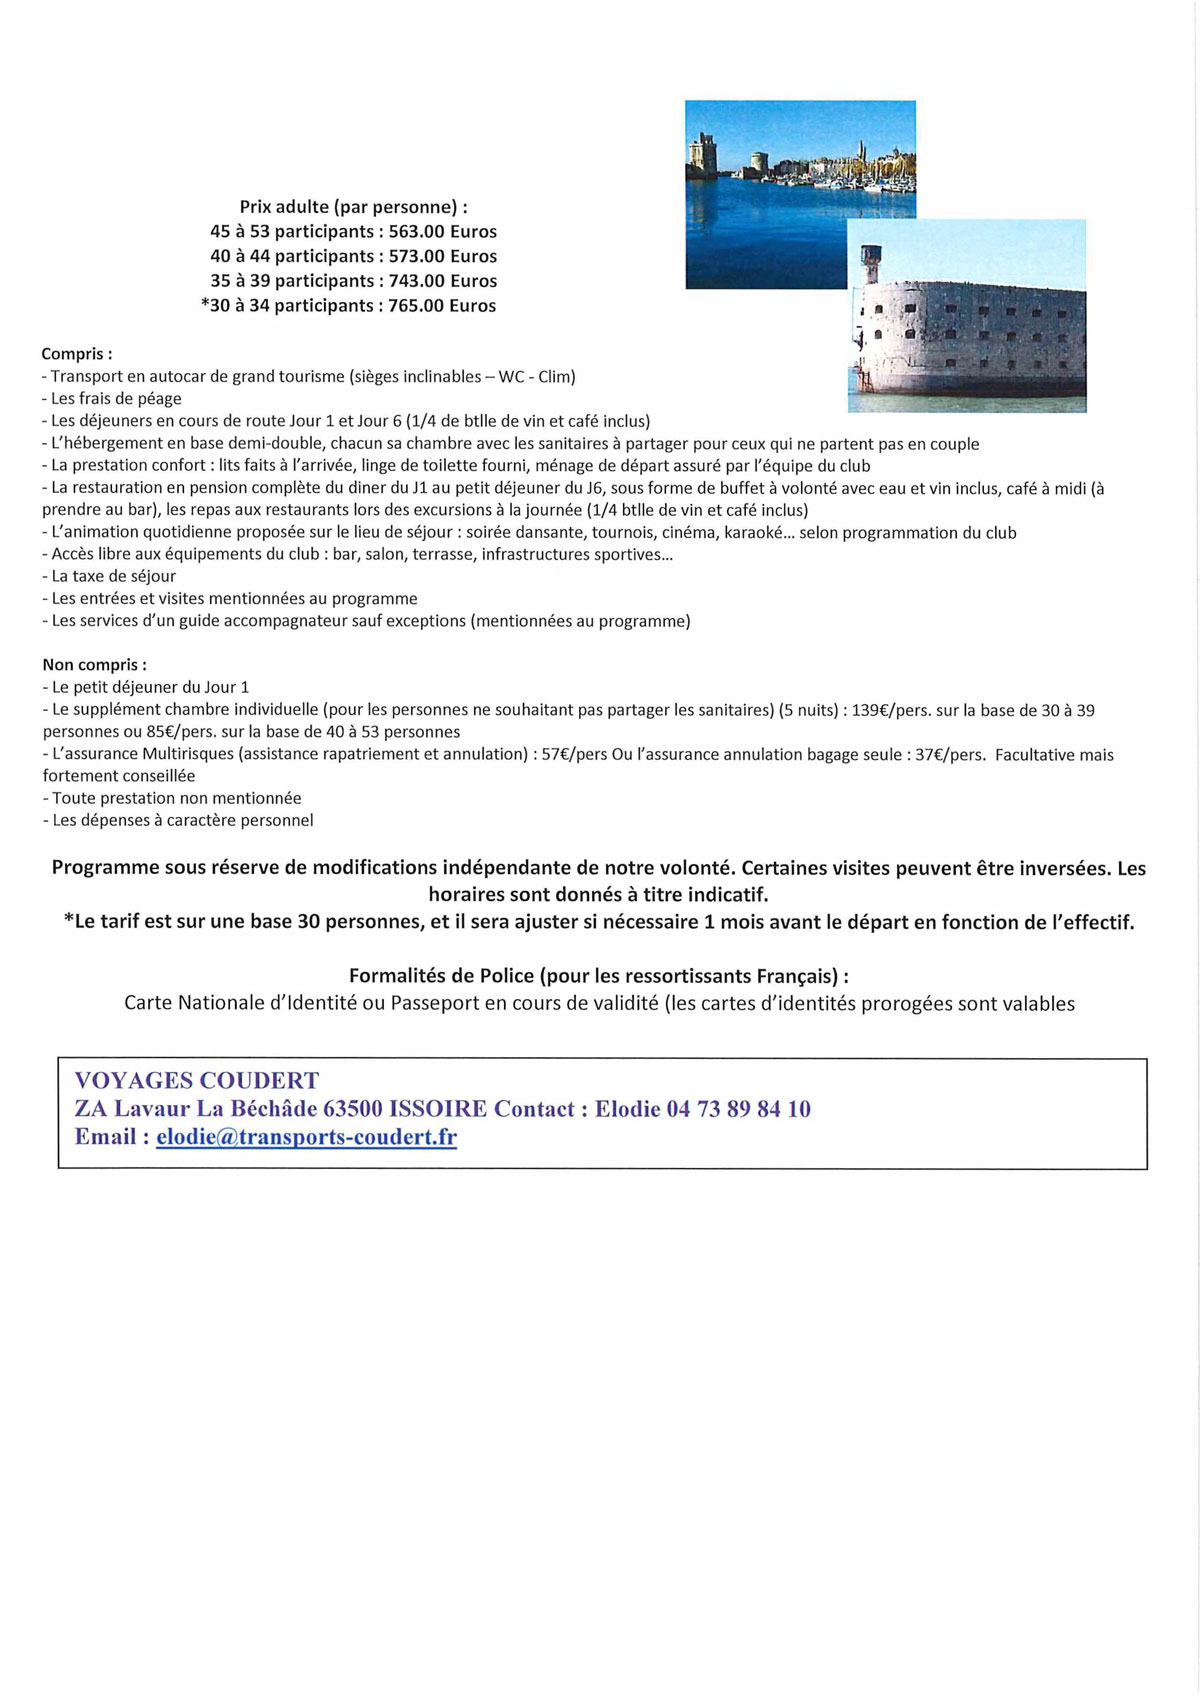 Fly Charente Maritime 21 au 26 juin 20 Cantalous de Gerzat A completer 2